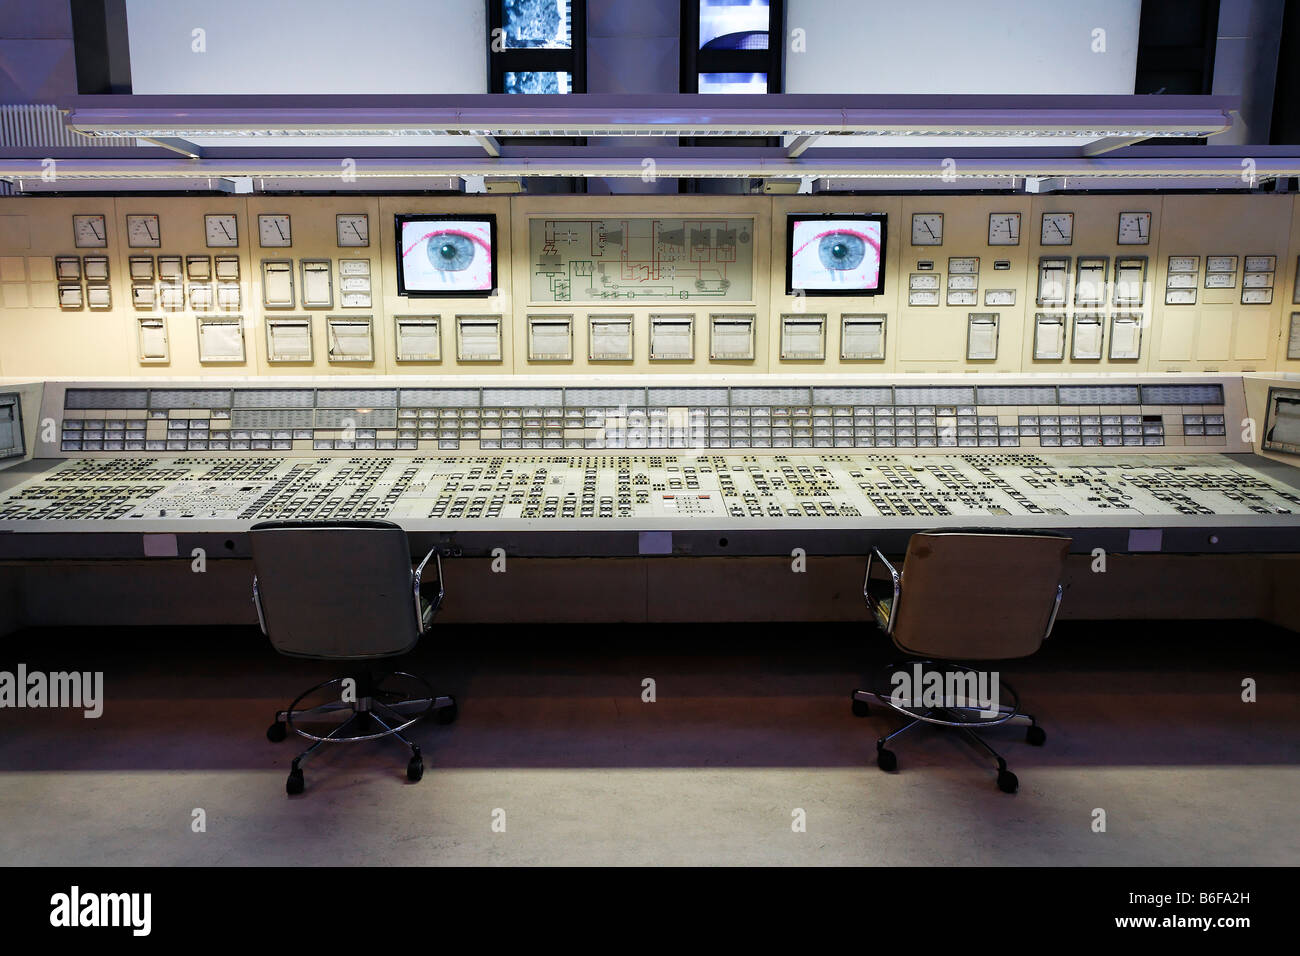 Sala de control de una central eléctrica desguazados recreados en una sala de exposiciones en DASA, Deutsche Arbeitsschutzausstell Foto de stock